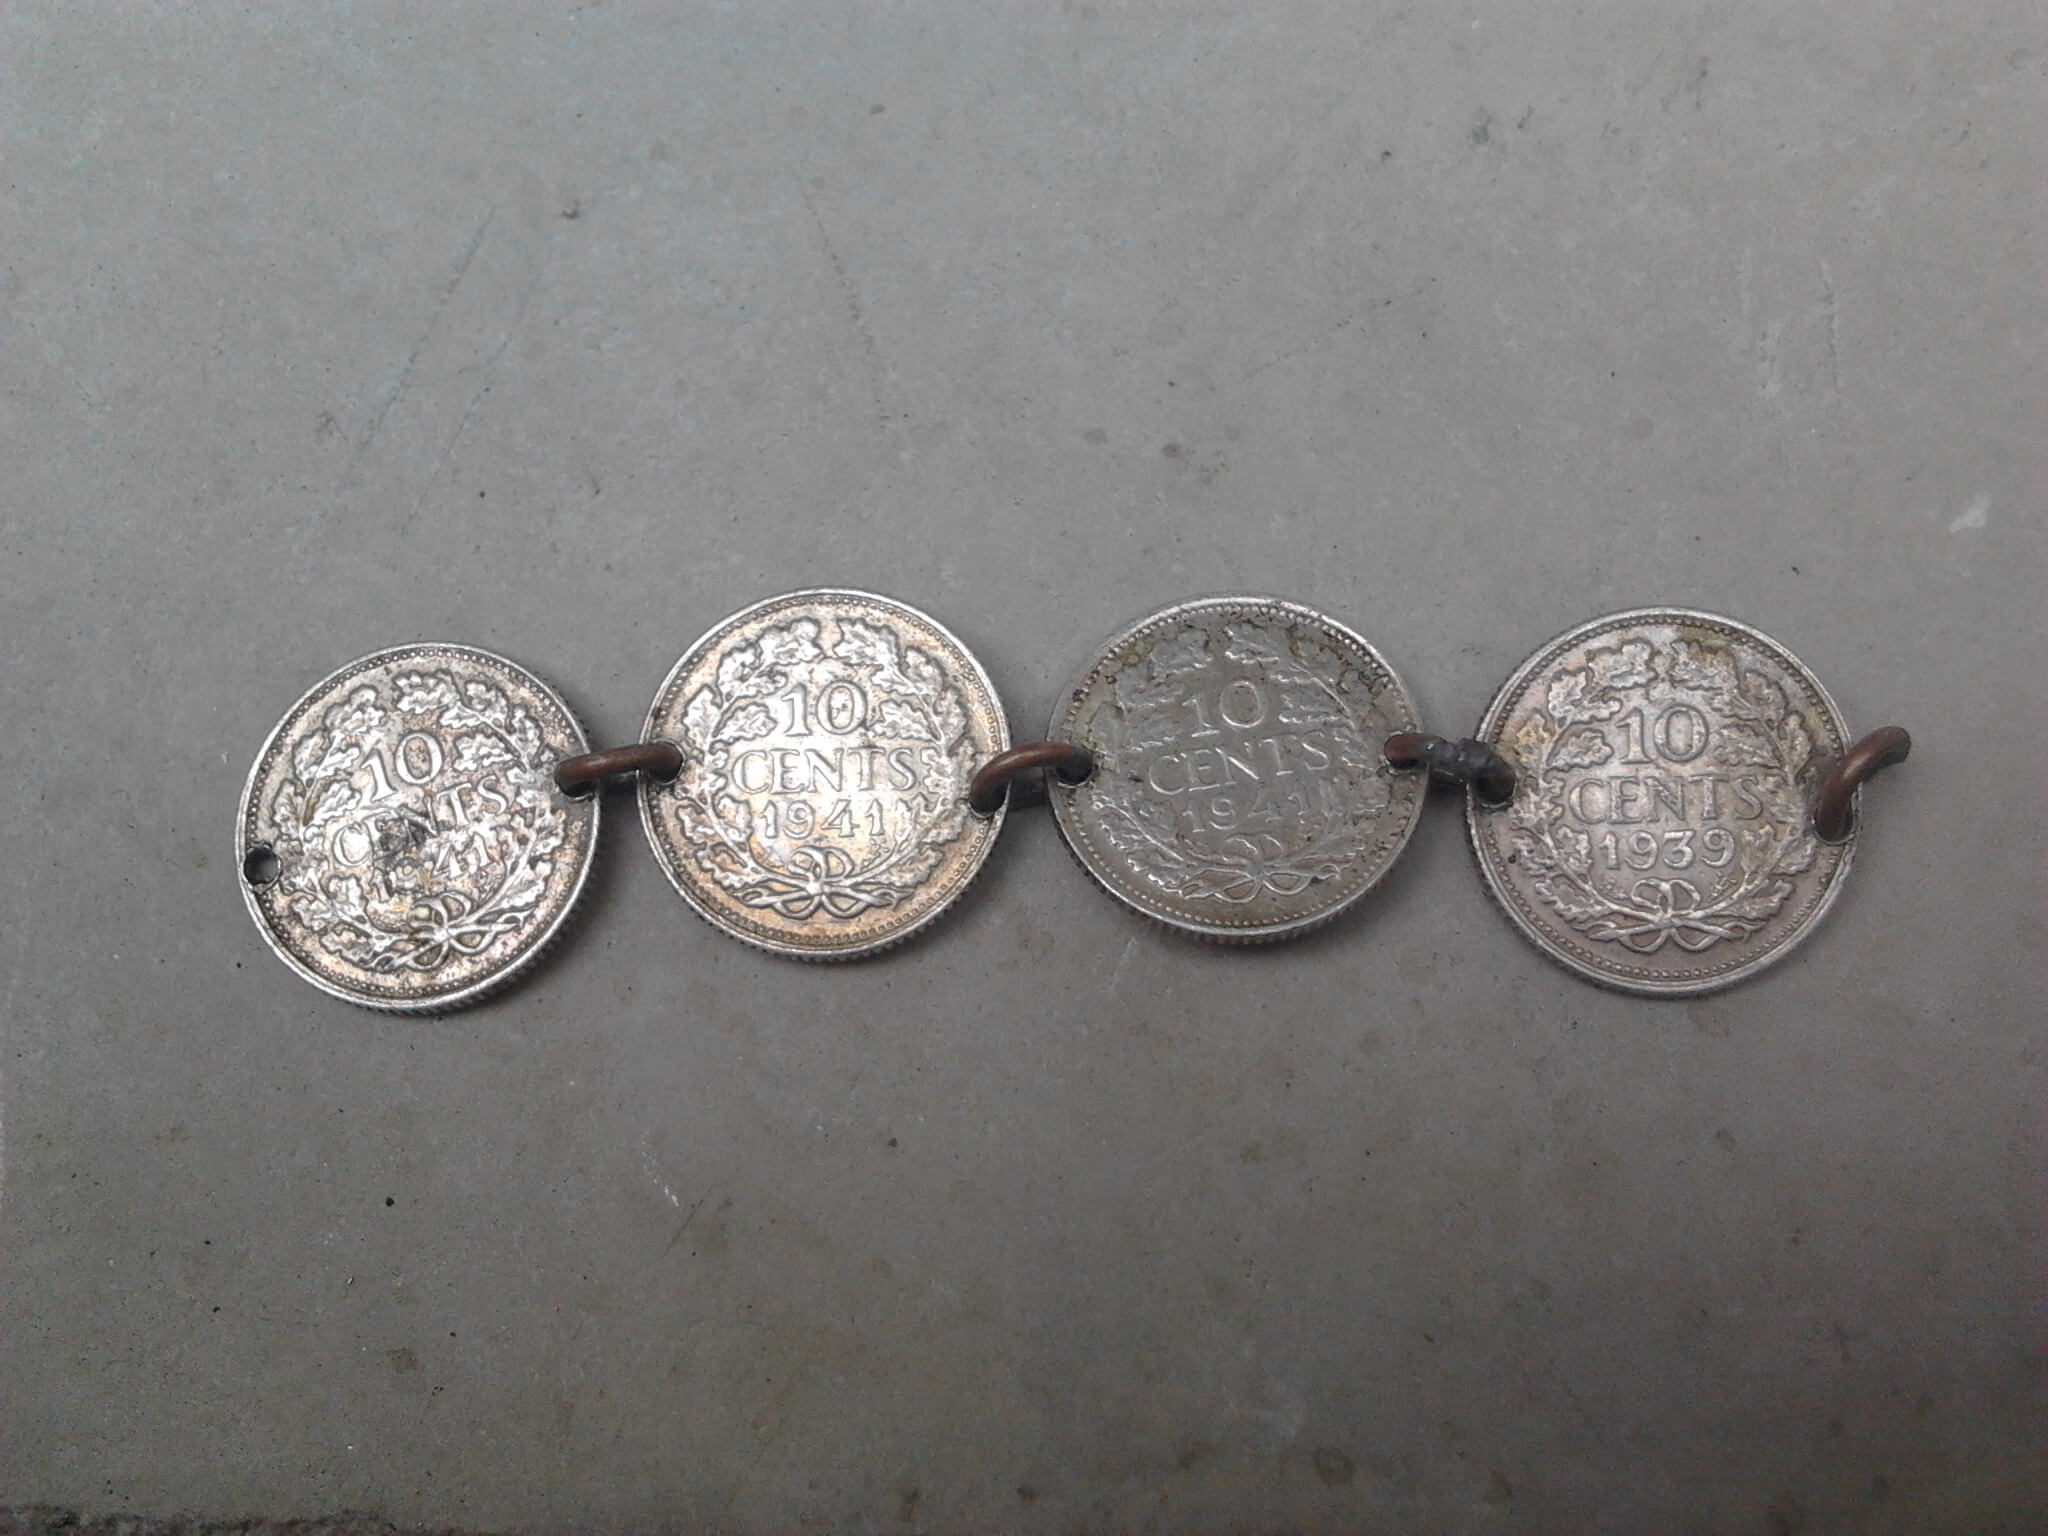 Sierraad gemaakt van 10 cent muntjes uit de tweede wereldoorlog